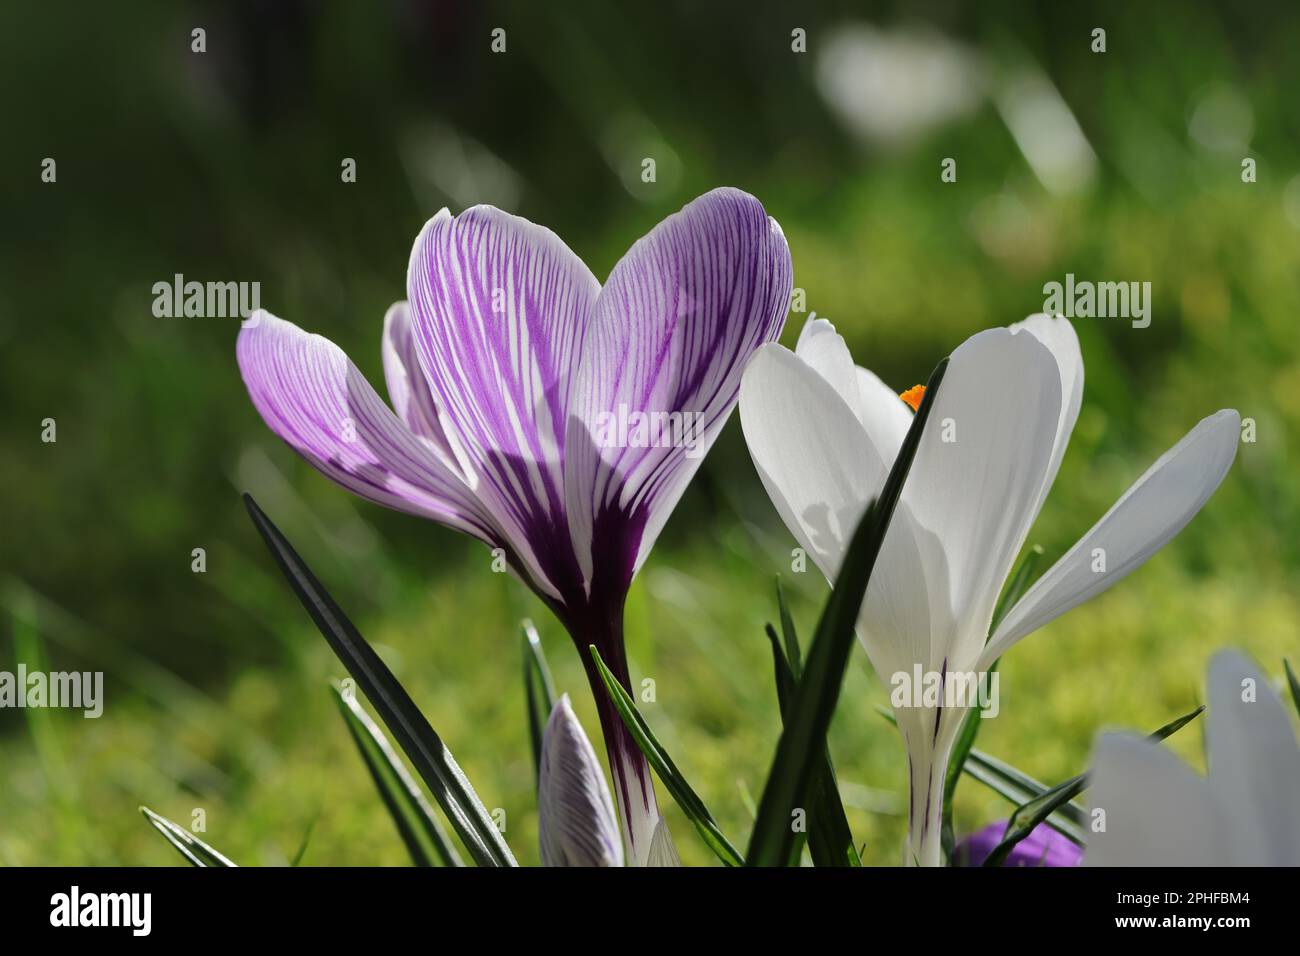 Gros plan de crocus de printemps blanc et violet à rayures sur une pelouse ensoleillée Banque D'Images